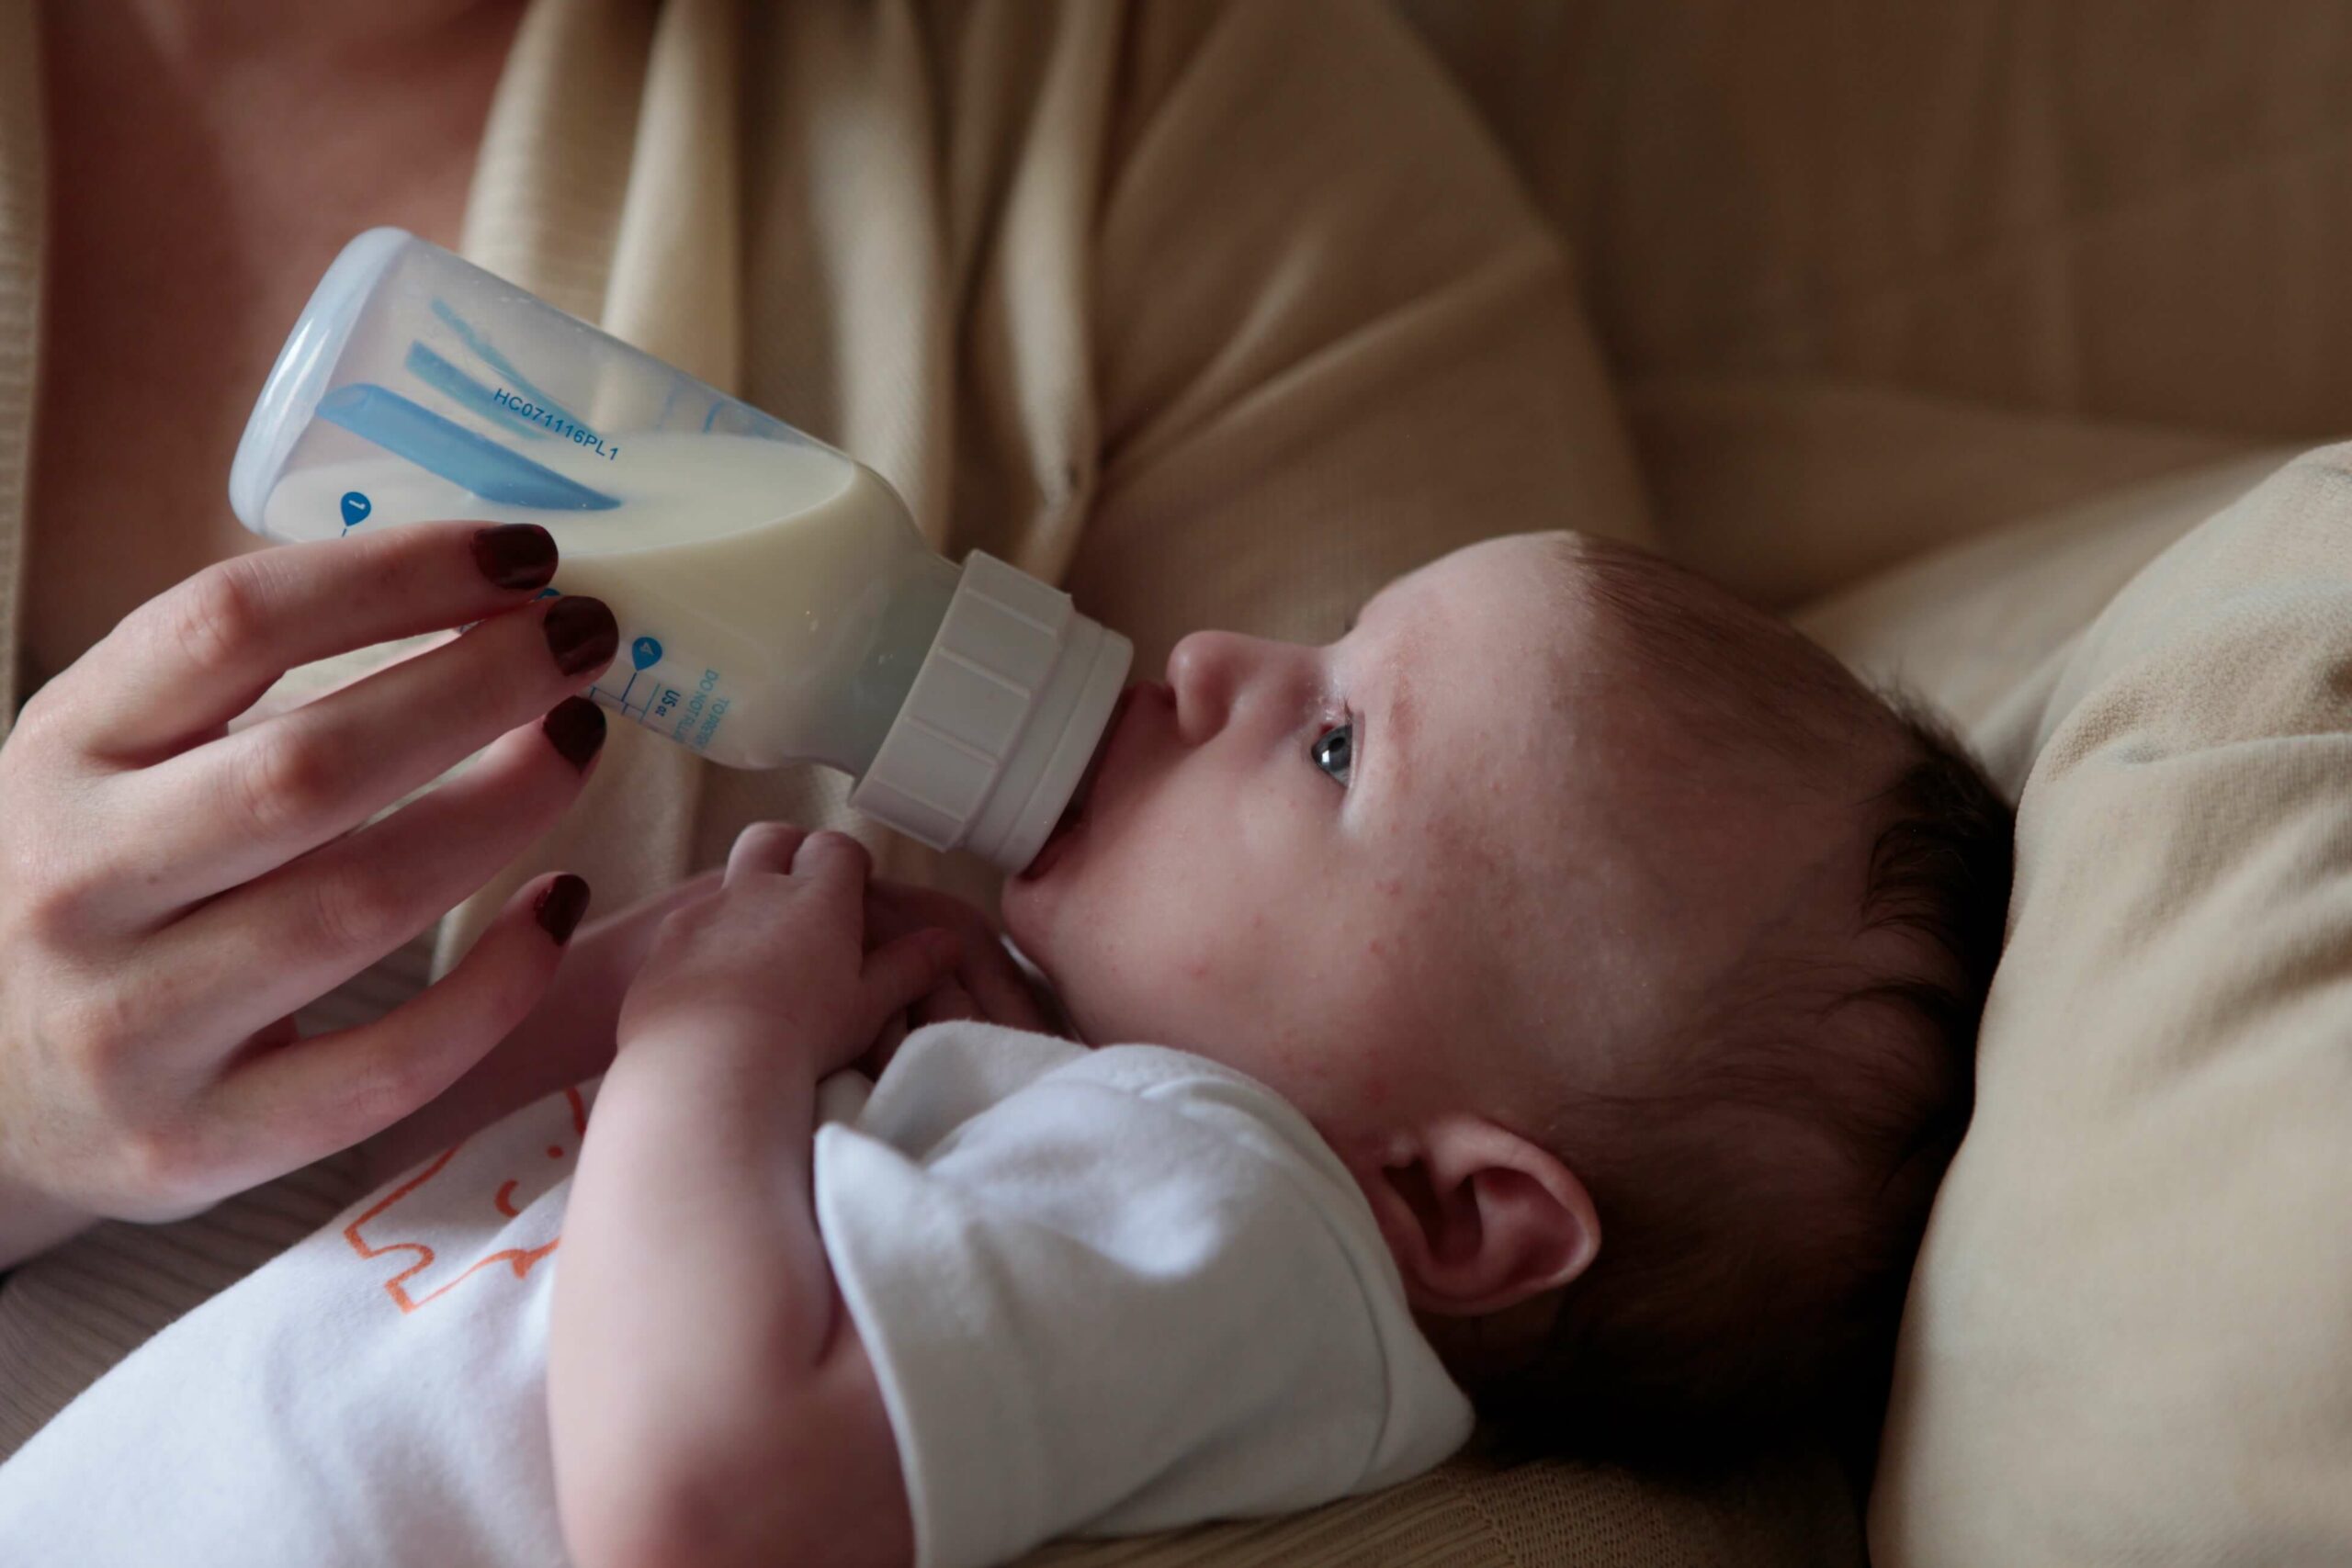 Tout savoir sur la conservation du lait maternel